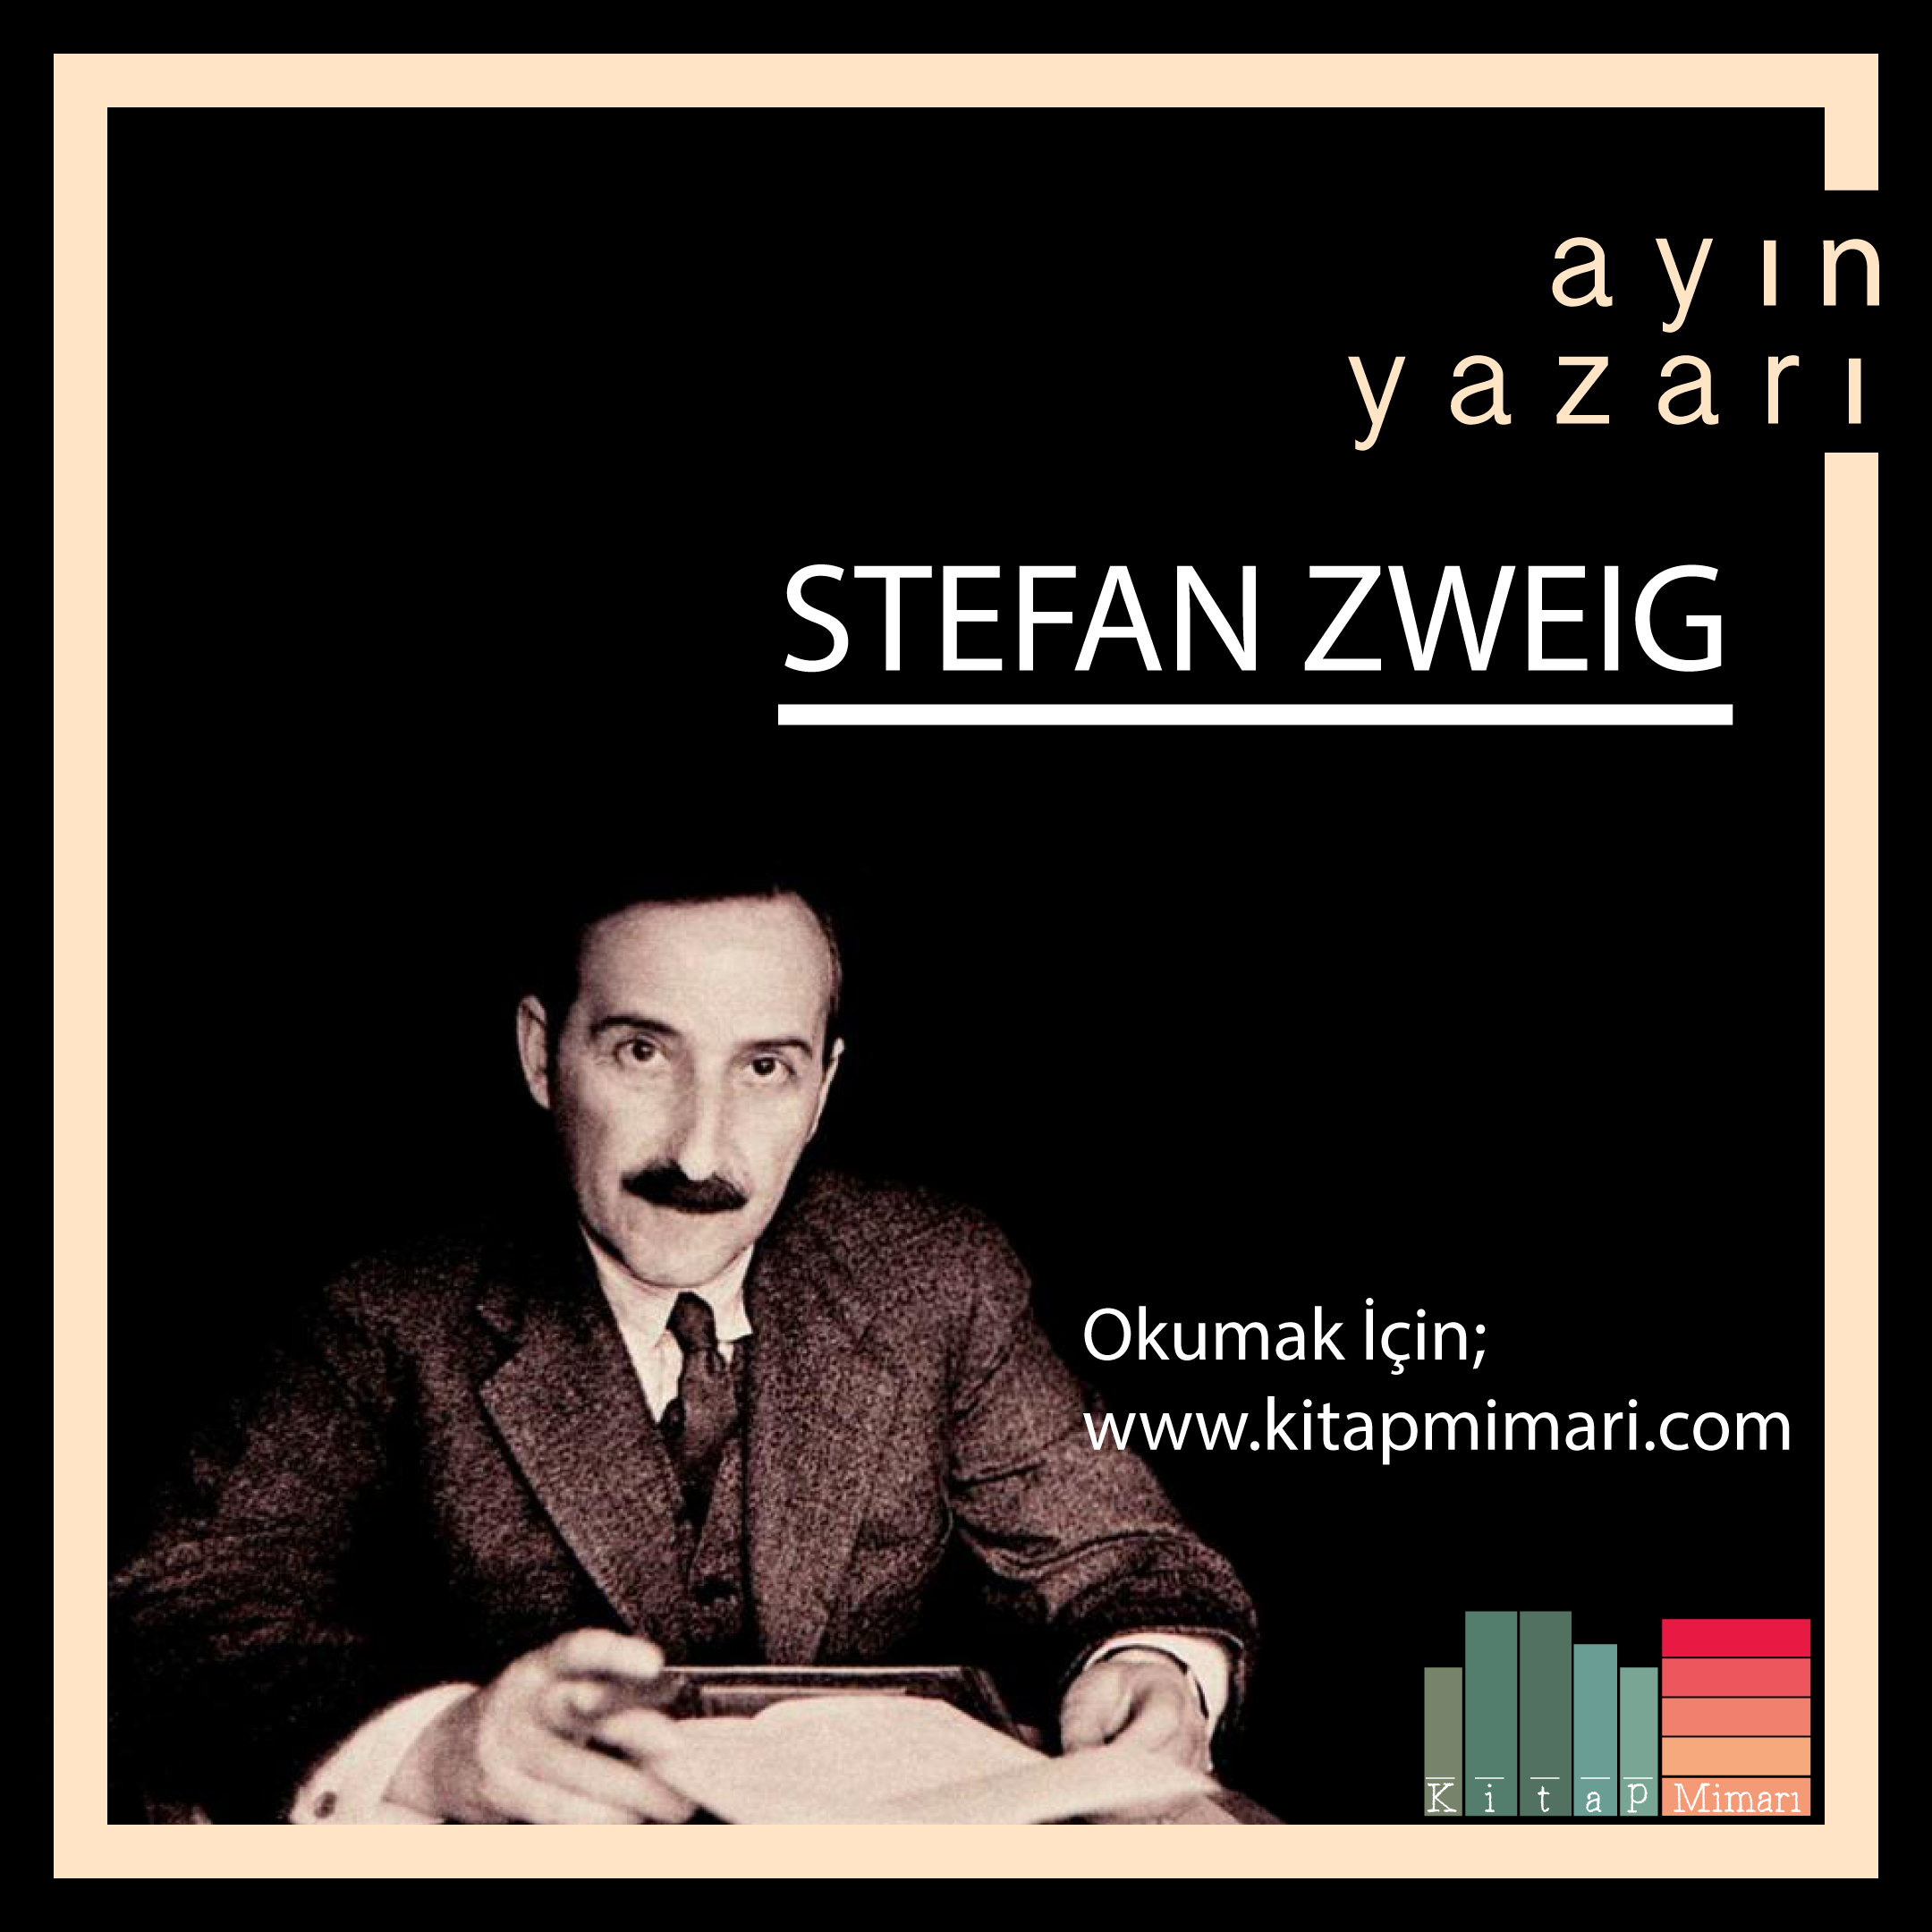 Ayın Yazarı - Stefan Zweig